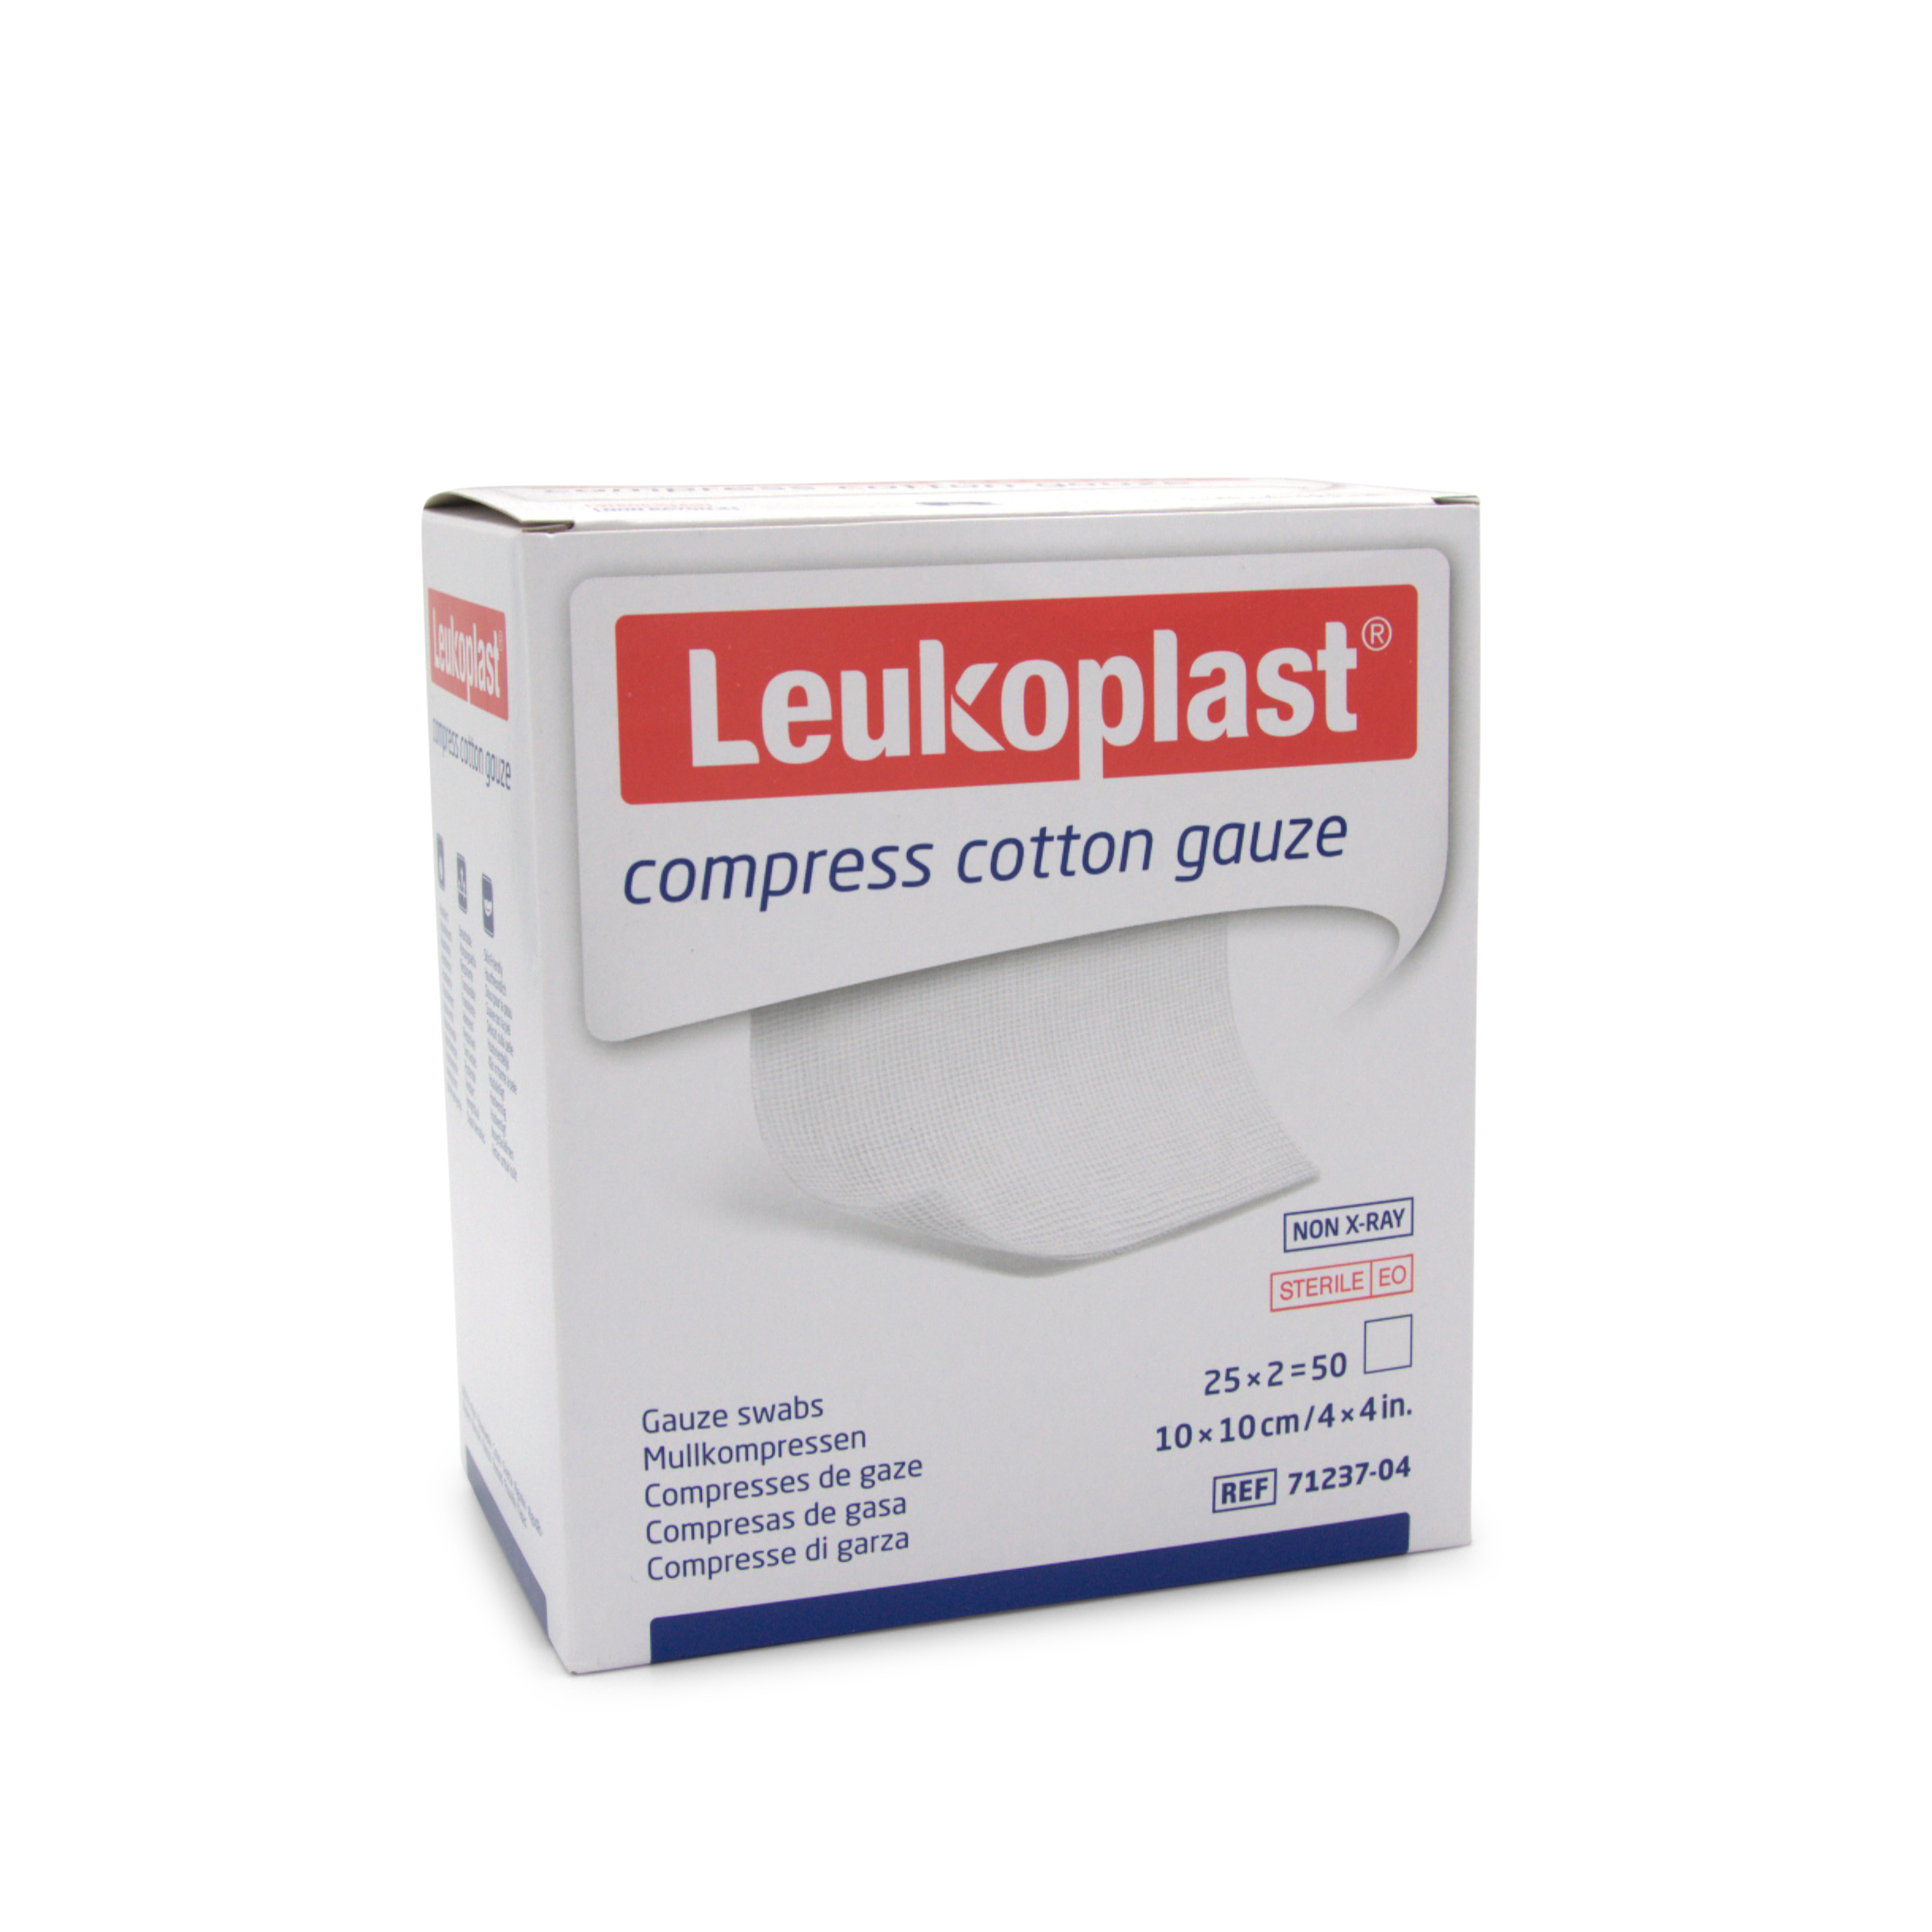 Leukoplast compress cotton gauze ((Mullkompressen) 10 x 10 cm, 8-fach, steril)